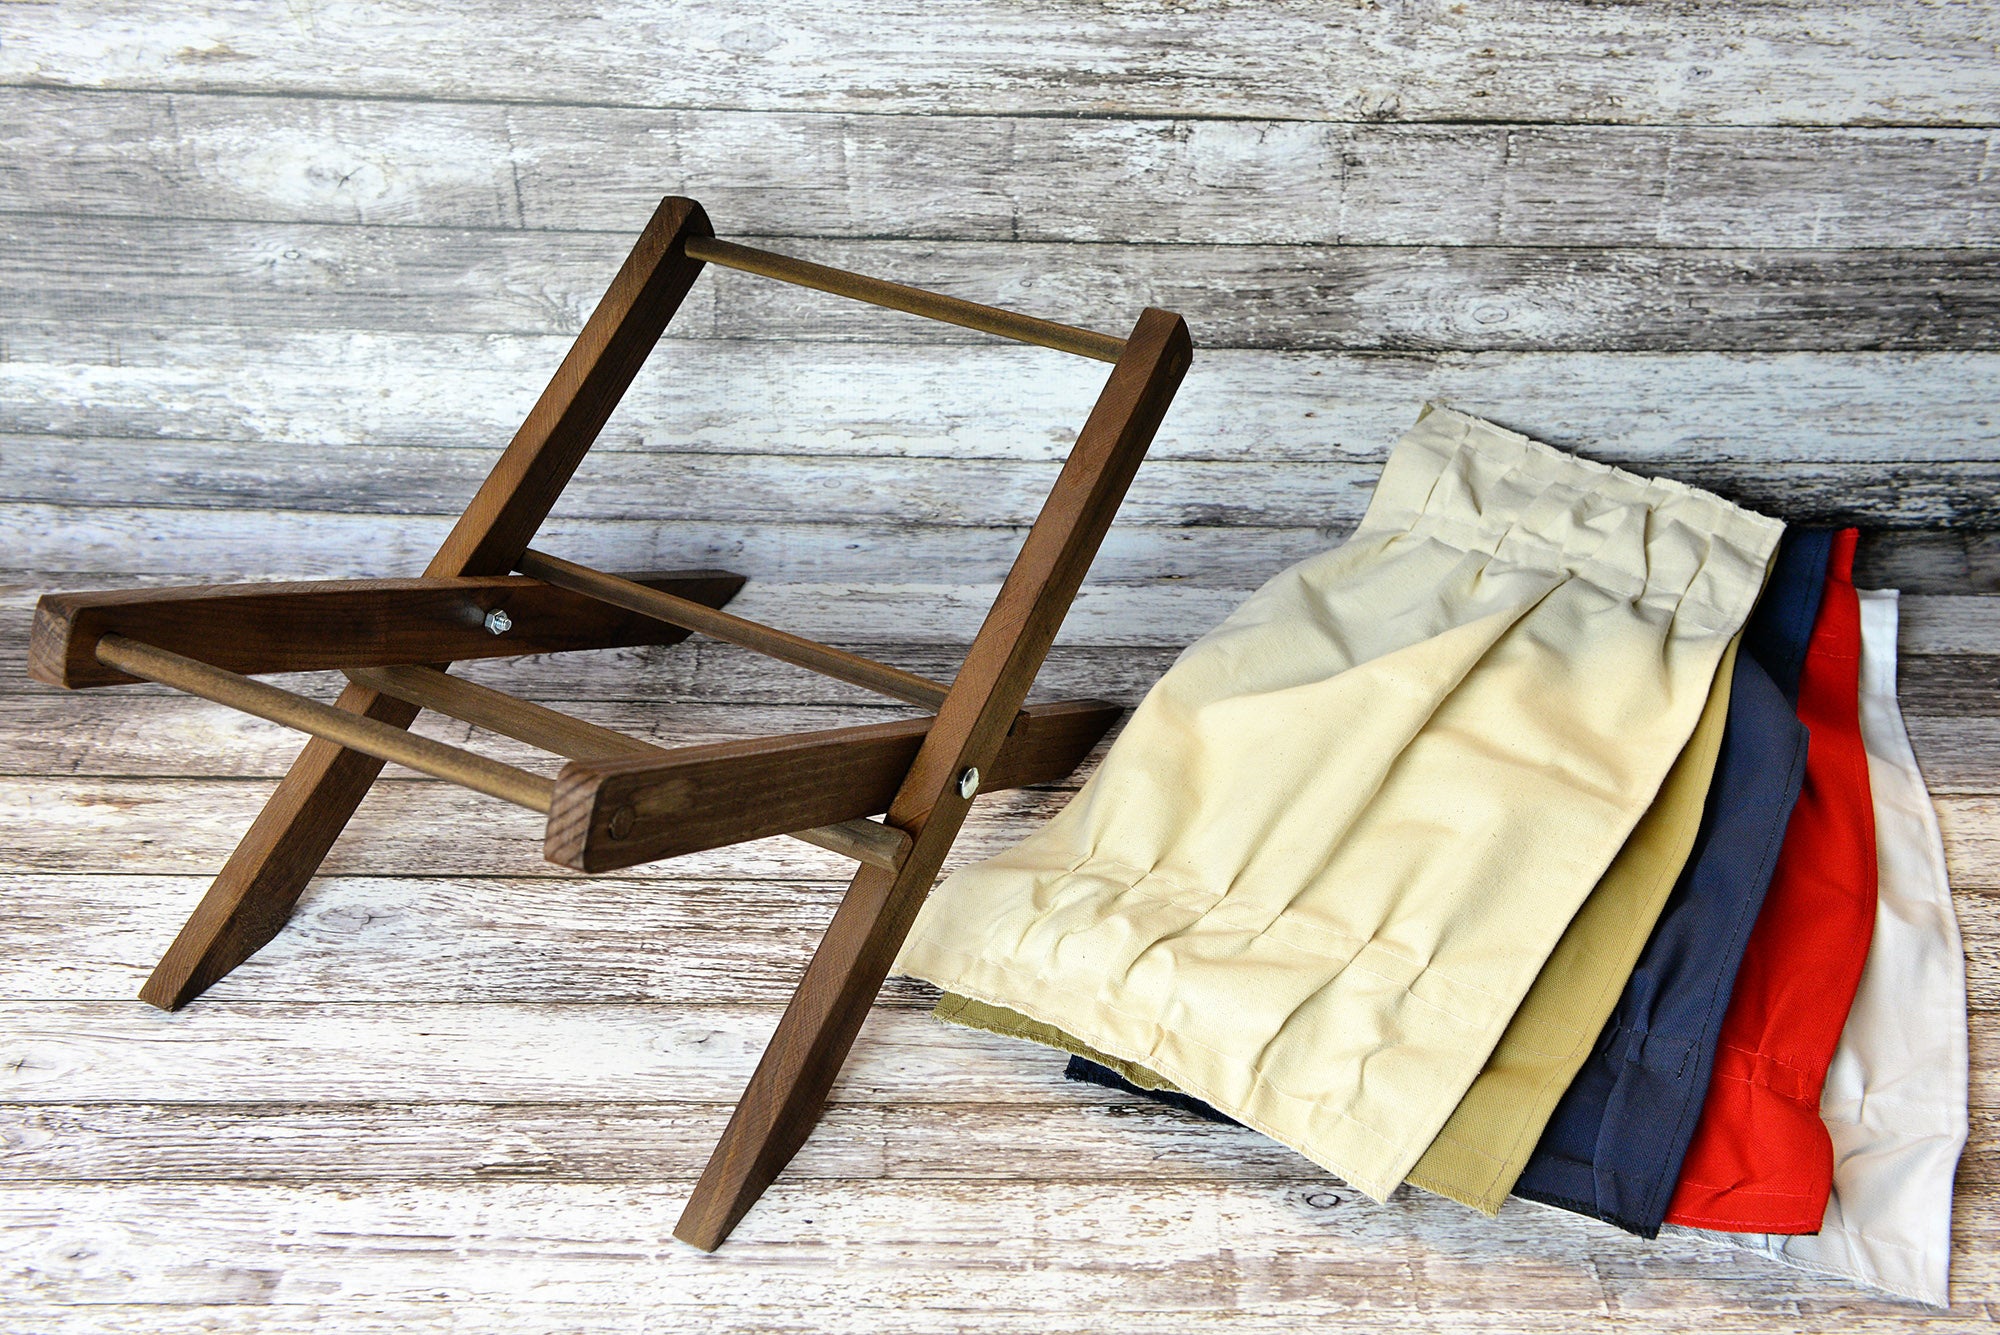 Rustic Deck Chair 5 Colors Interchangeable Newborn Studio Props